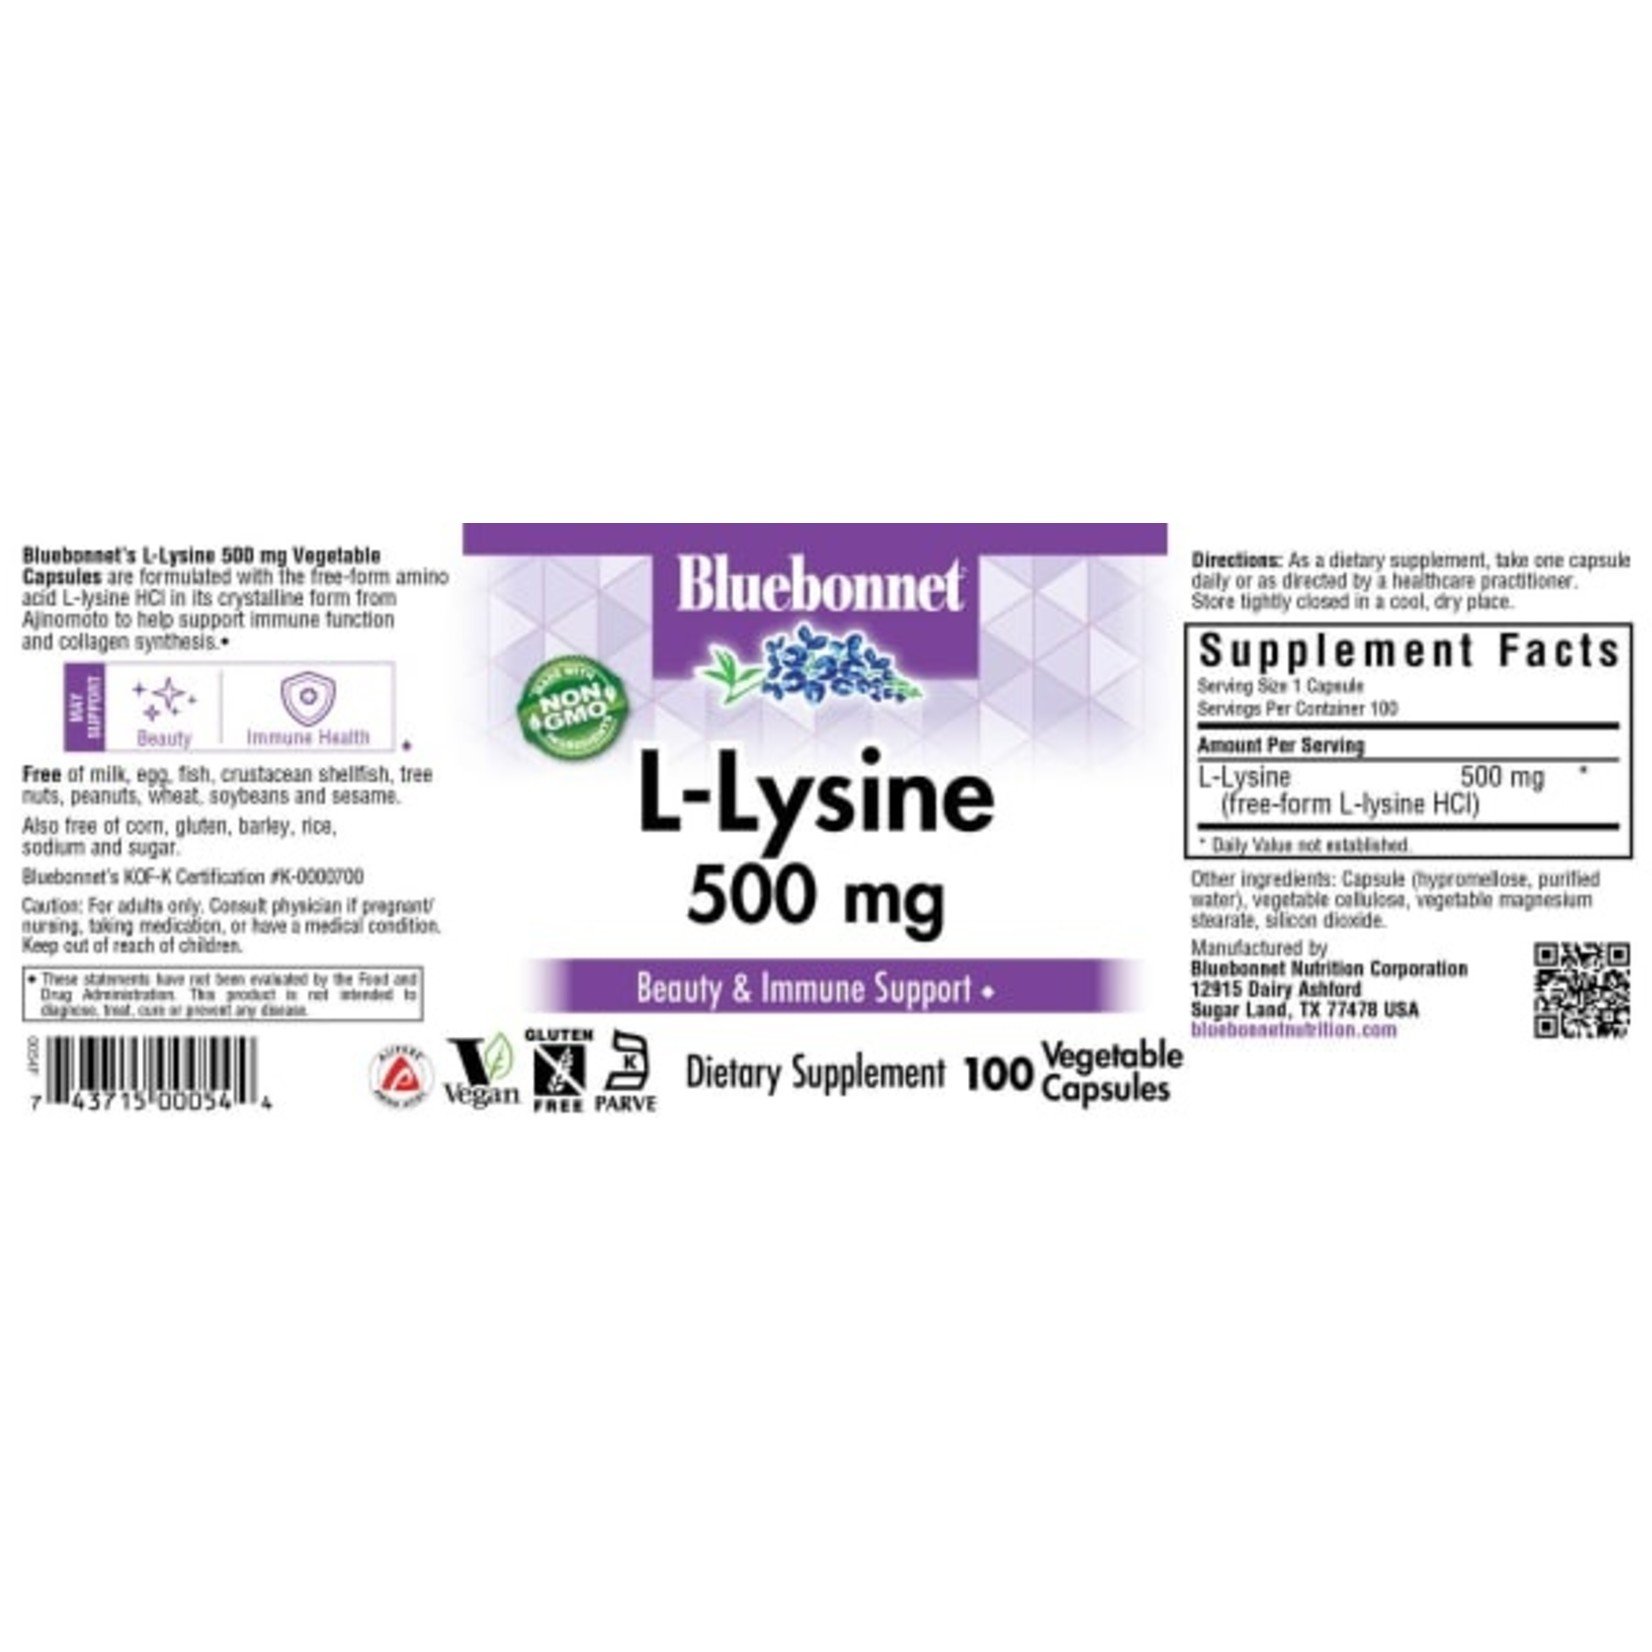 Bluebonnet Bluebonnet - L-Lysine 500 mg - 100 Veg Capsules